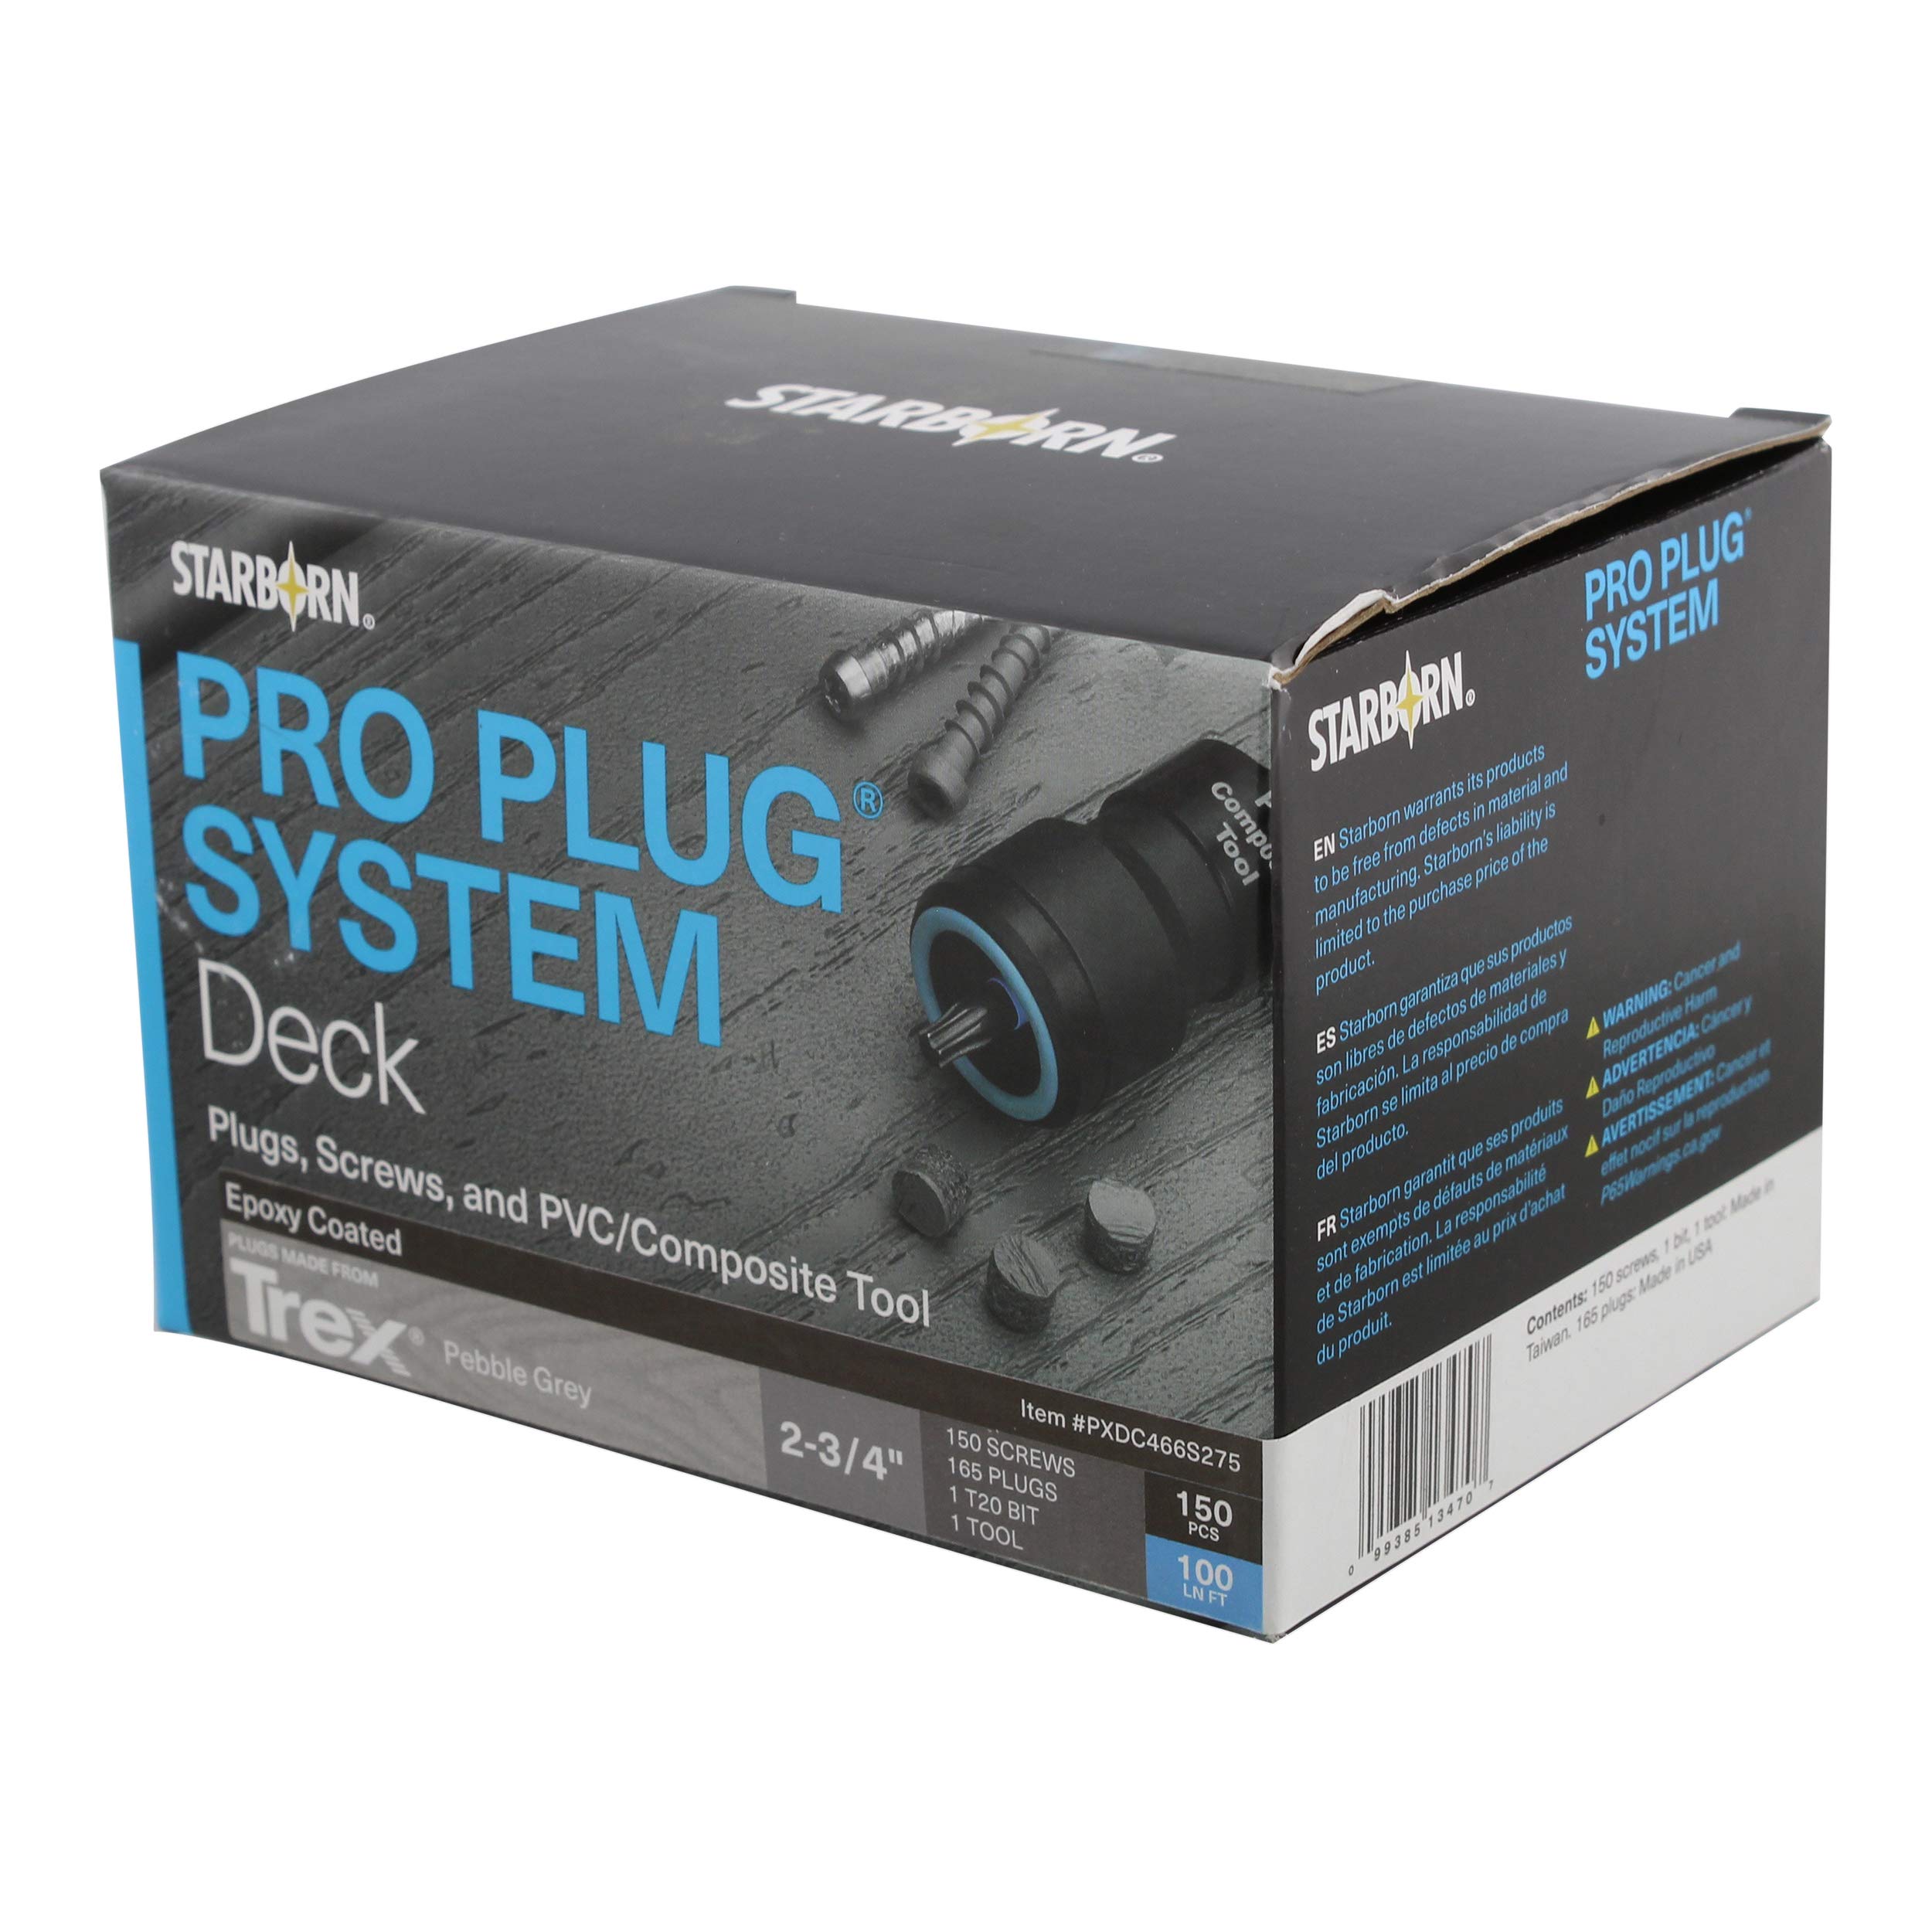 Pro Plug System là lựa chọn tốt cho các thợ điện hay công nhân cơ khí. Với tính năng linh hoạt, tiện dụng và nhanh chóng, nó sẽ giúp bạn tiết kiệm nhiều thời gian và công sức trong việc gắn các bộ phận cơ khí. Nhấn vào hình ảnh bên dưới để tìm hiểu thêm về Pro Plug System.